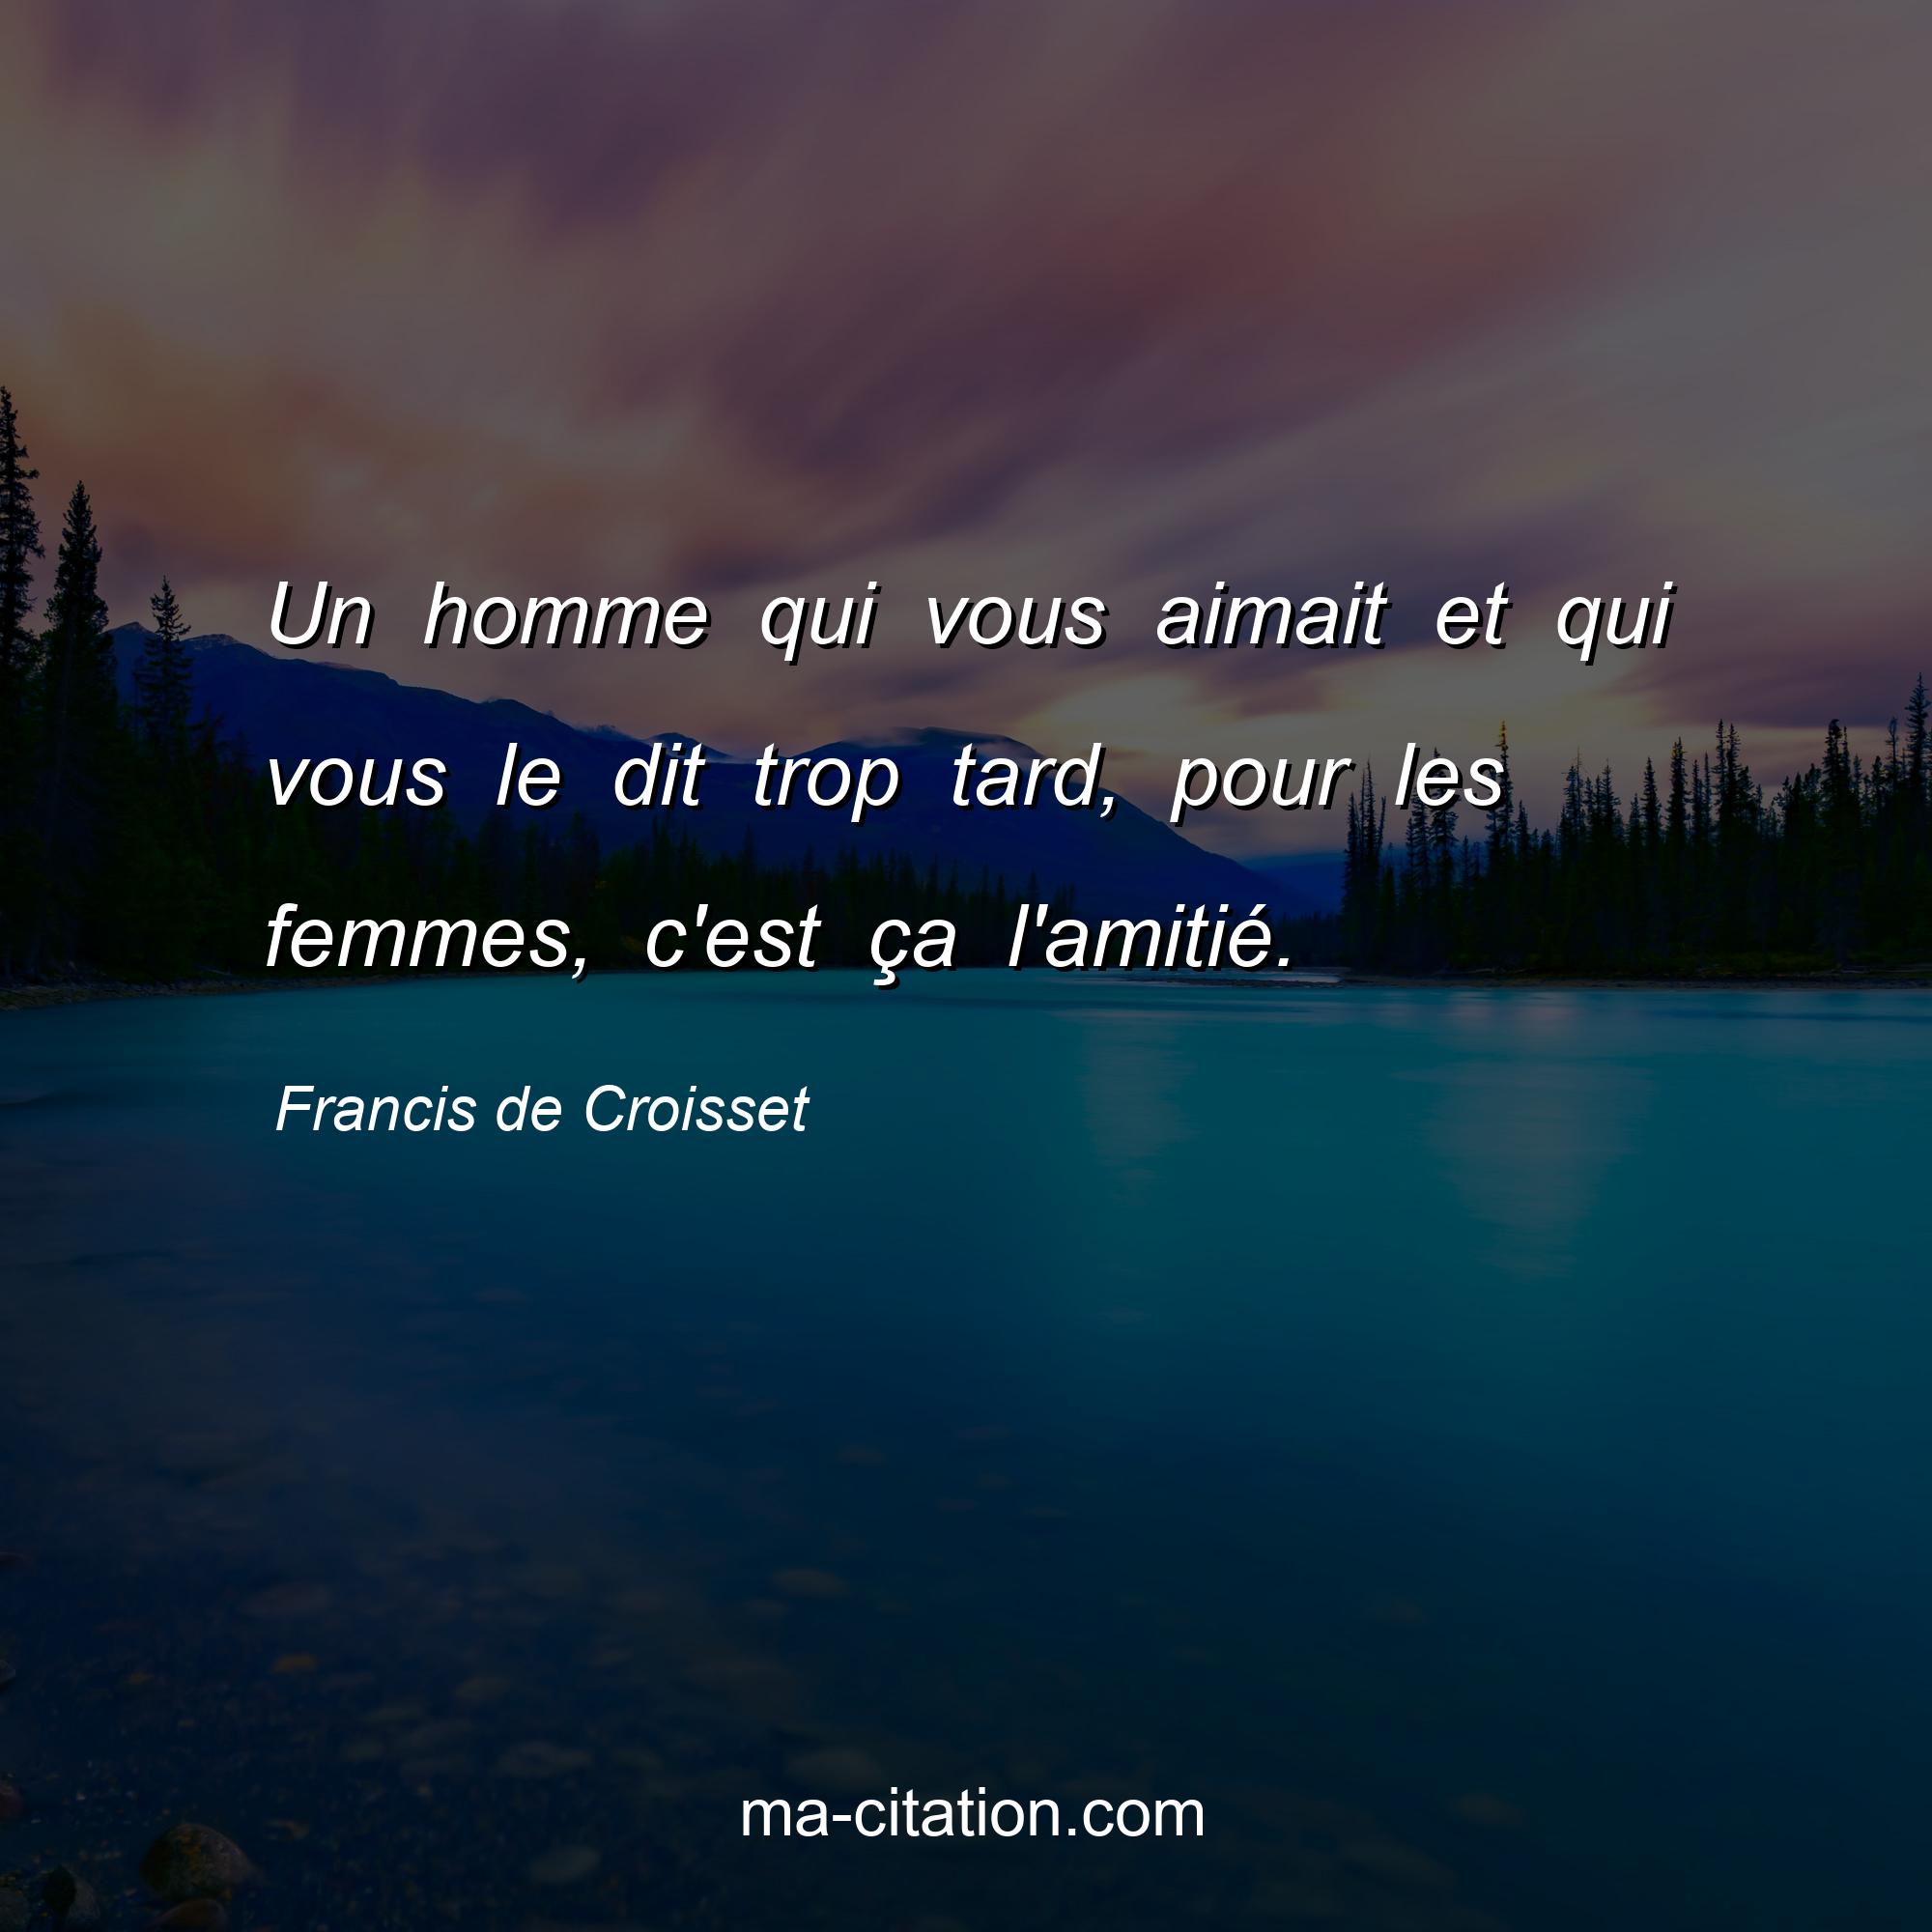 Francis de Croisset : Un homme qui vous aimait et qui vous le dit trop tard, pour les femmes, c'est ça l'amitié.